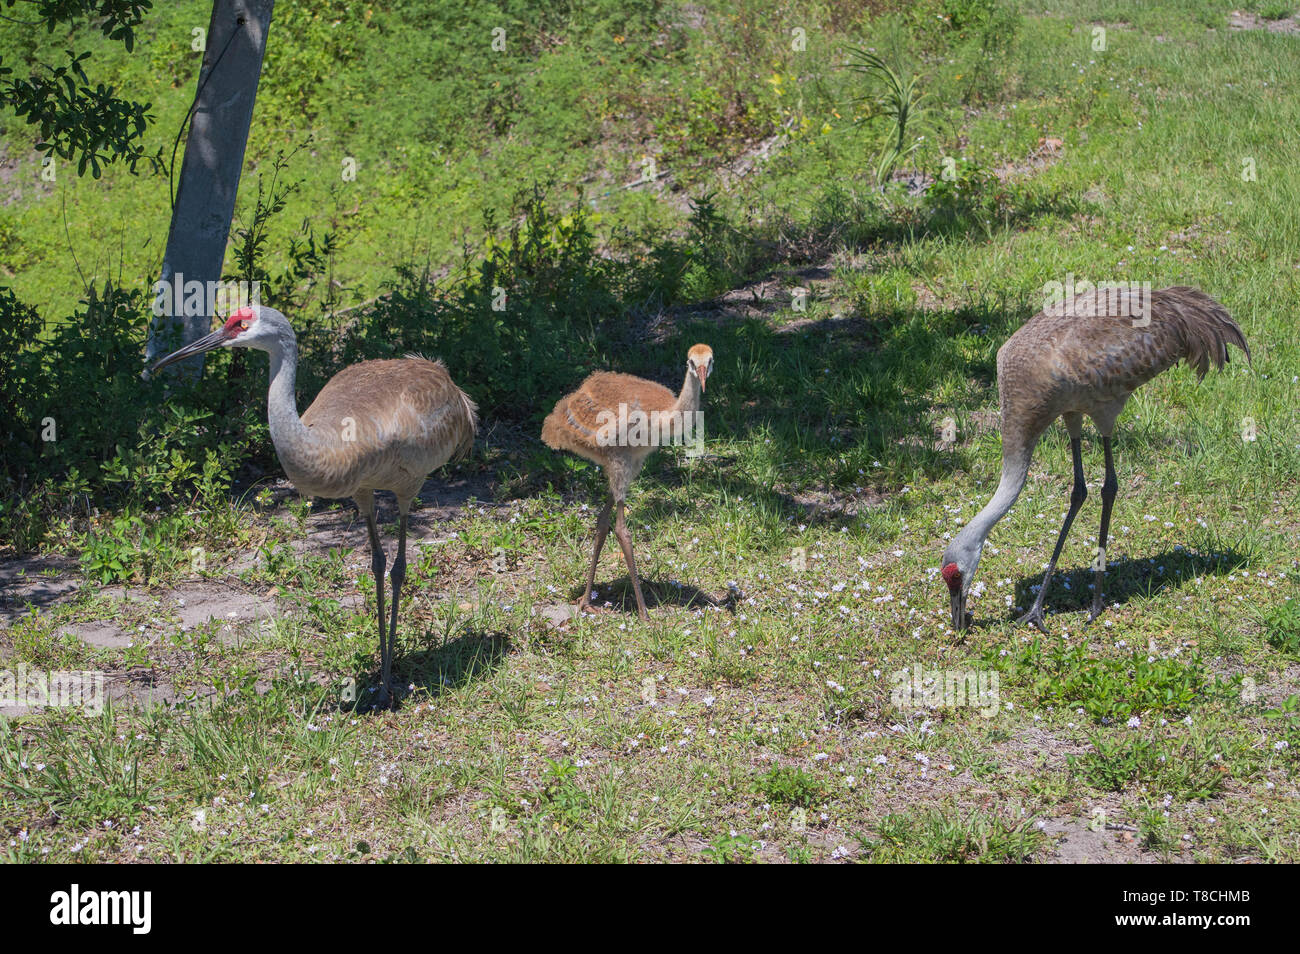 Paisaje Wildlife Photography Florida Sandhill Padres adultos alimentos forrajeros campo de hierba verde Juveniles Chick Bird Cerca mirando hacia adelante Foto de stock